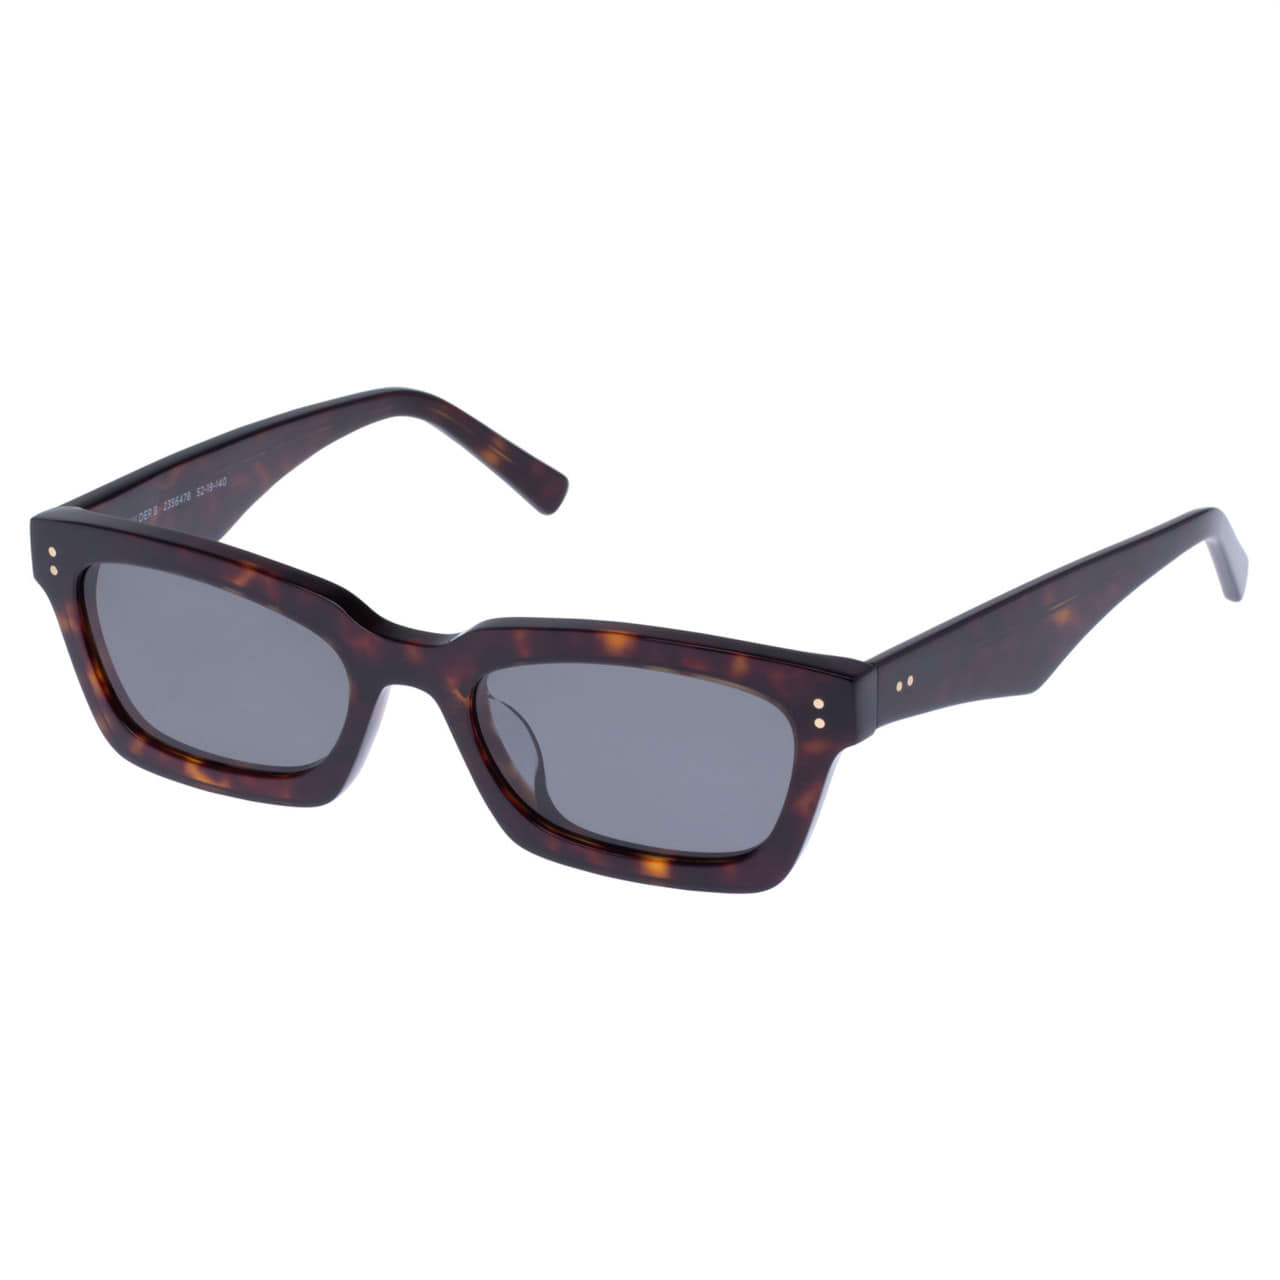 Wilder Polarised Sunglasses - Signature Tort | Oroton